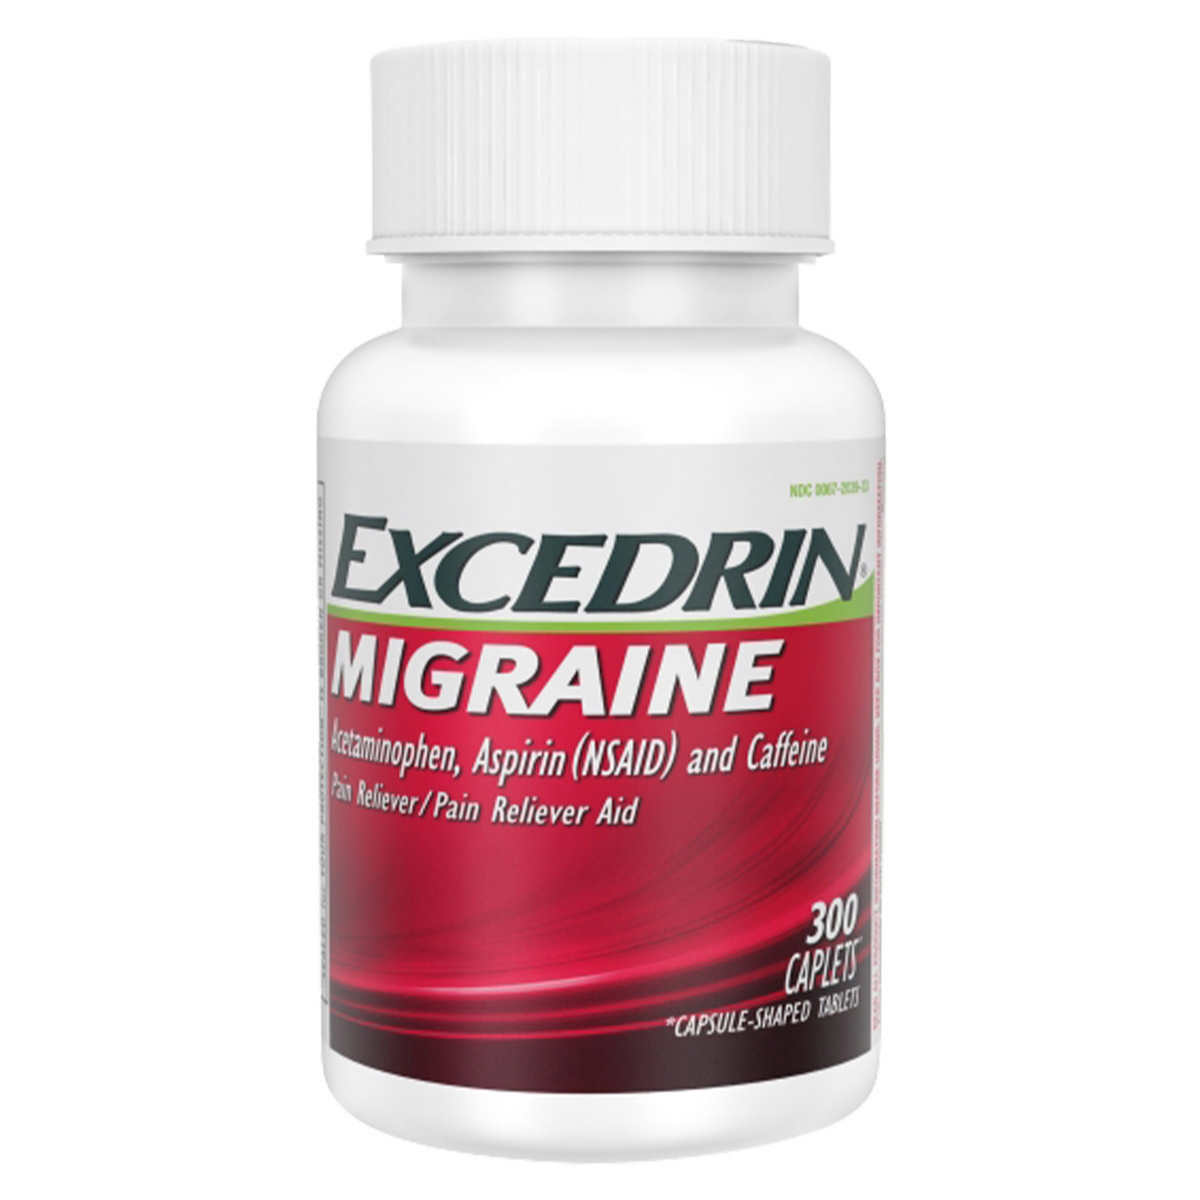 Excedrin Migraine Relief, 300 Caplets